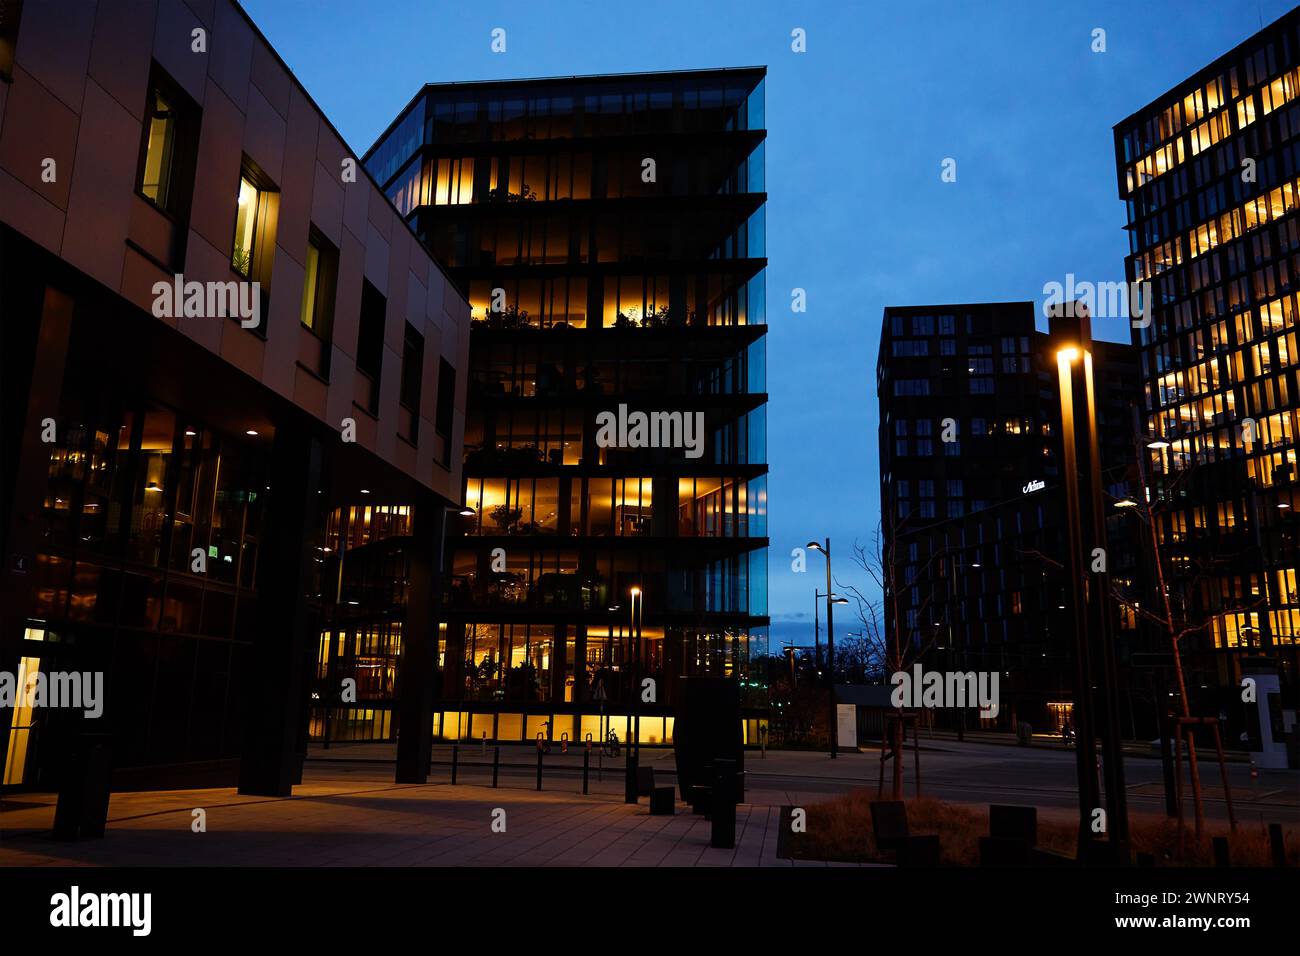 L'immeuble de bureaux illumine la soirée avec des fenêtres qui brillent au crépuscule, mettant en valeur la vie de travail urbaine après les heures de travail Banque D'Images